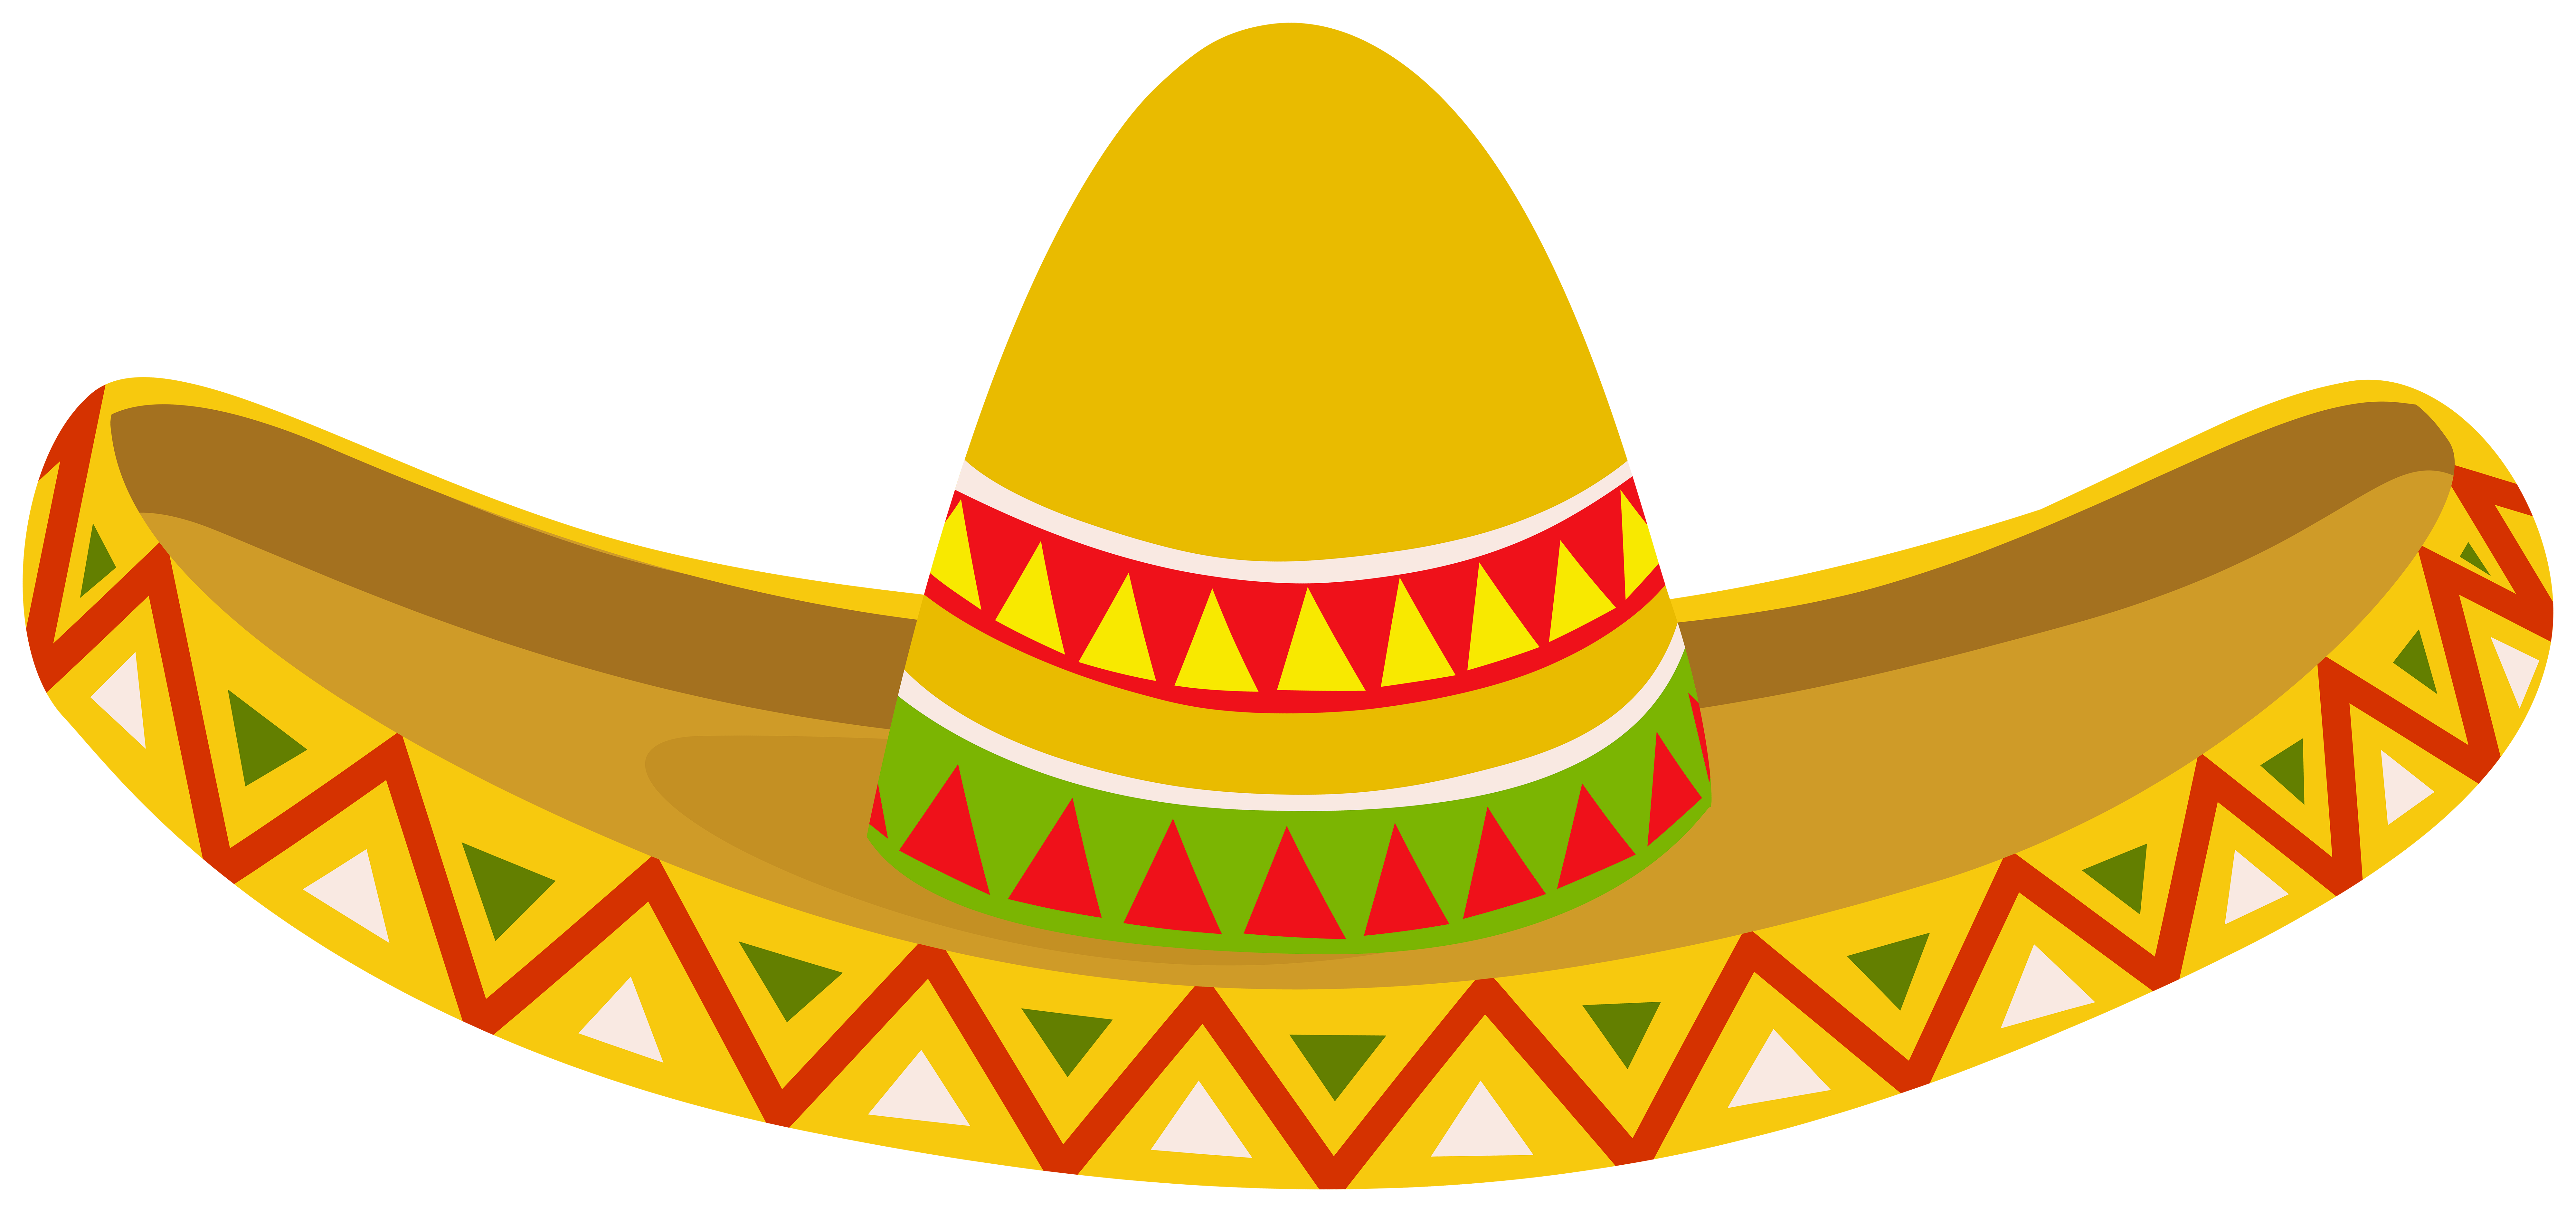 Мексиканская шляпа: векторные изображения и иллюстрации, которые можно скачать бесплатно | Freepik